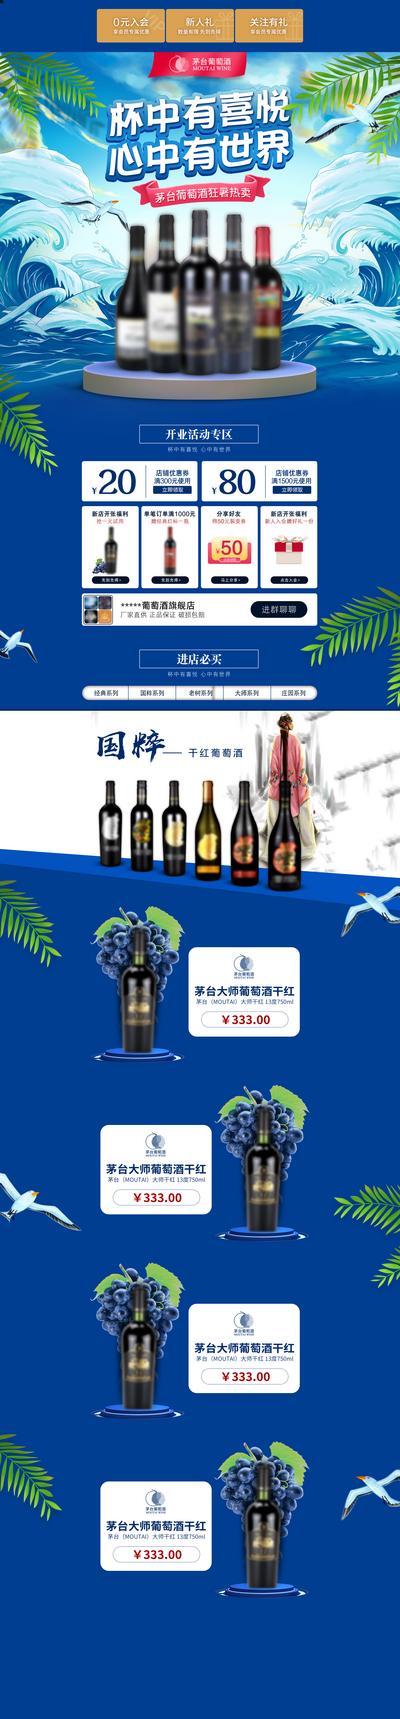 南门网 广告 长图 电商 红酒 专题 天猫 活动 促销 酱酒